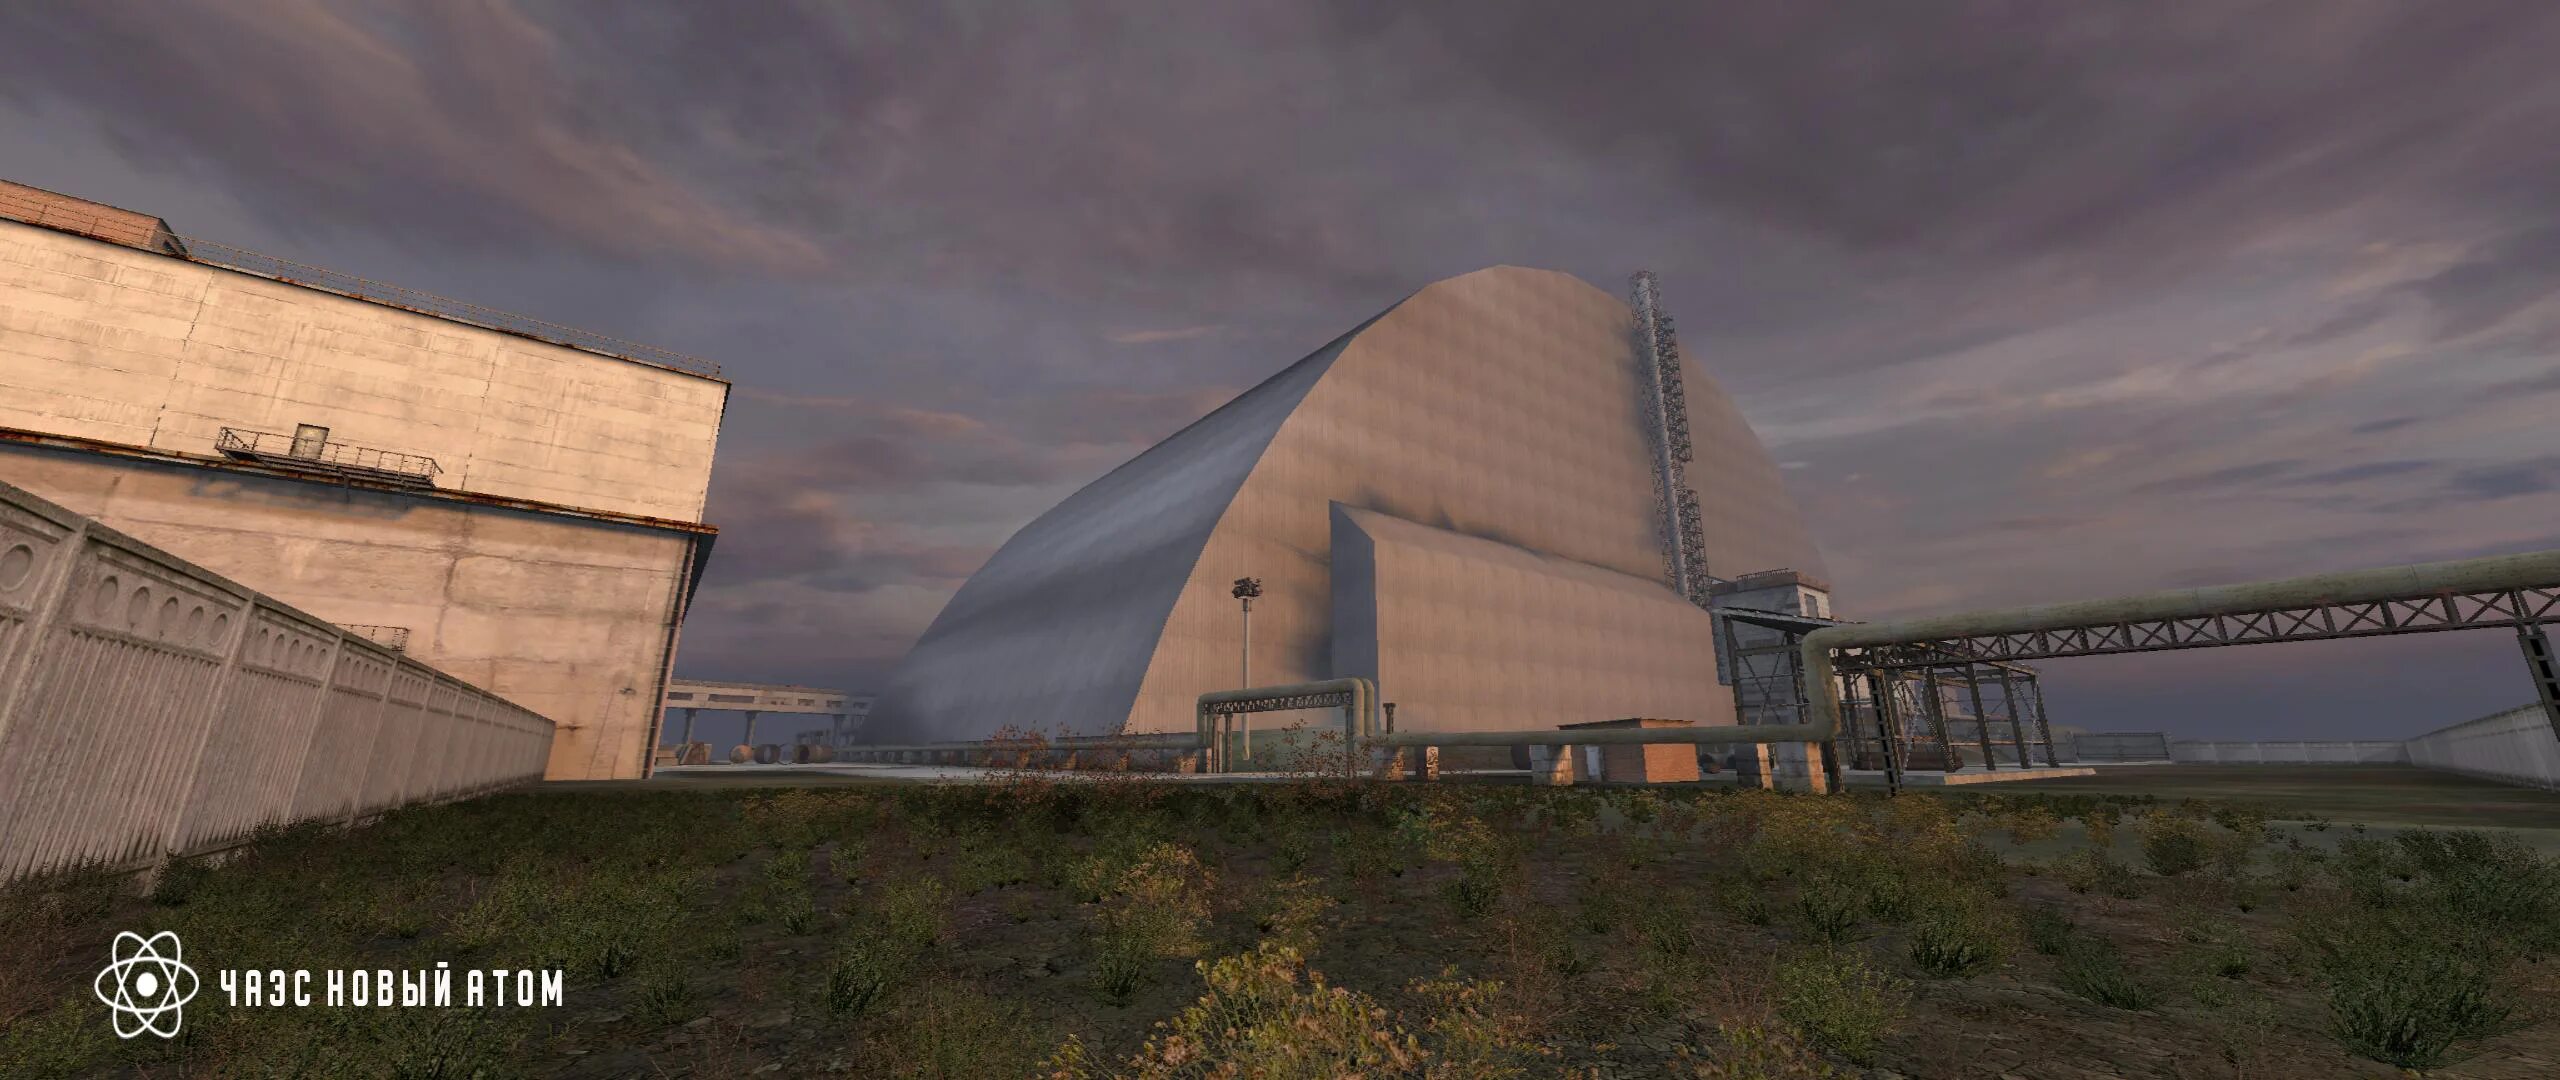 Chernobyl 2023. Чернобыль саркофаг 2023. Чернобыль новая станция 2023. Крымская АЭС 2023. ЧАЭС 2023 год.